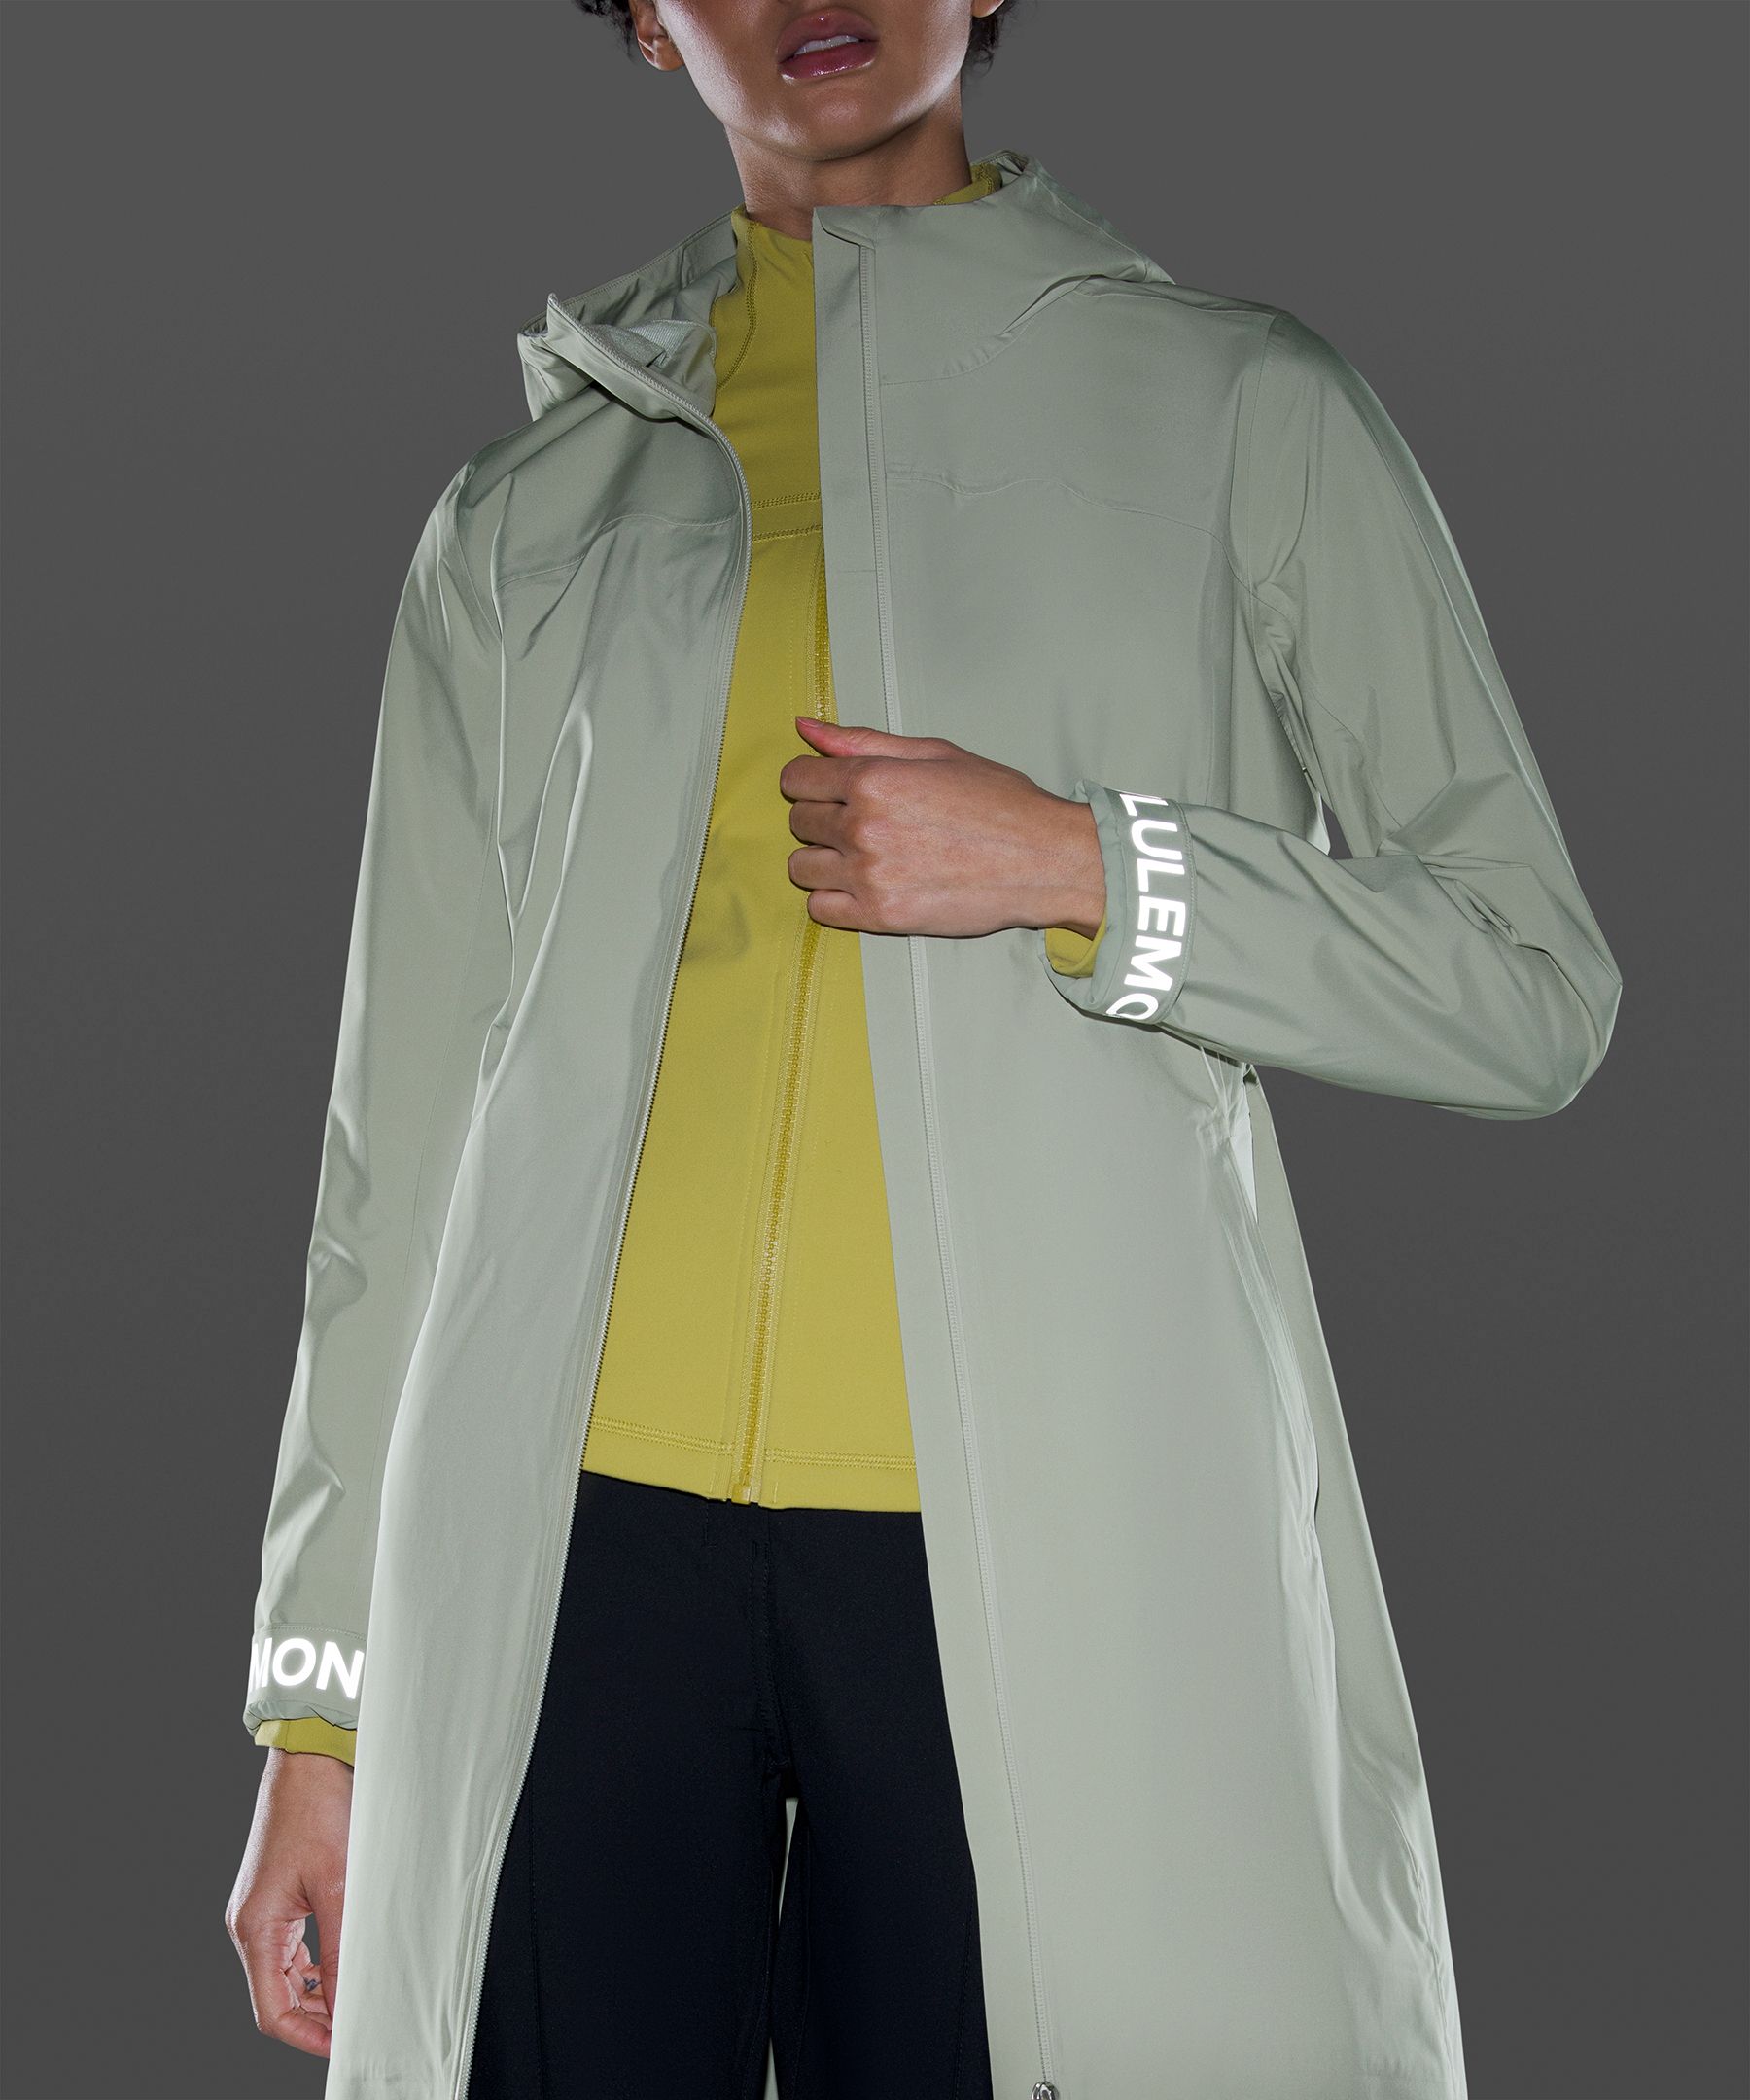 lululemon rain jacket australia